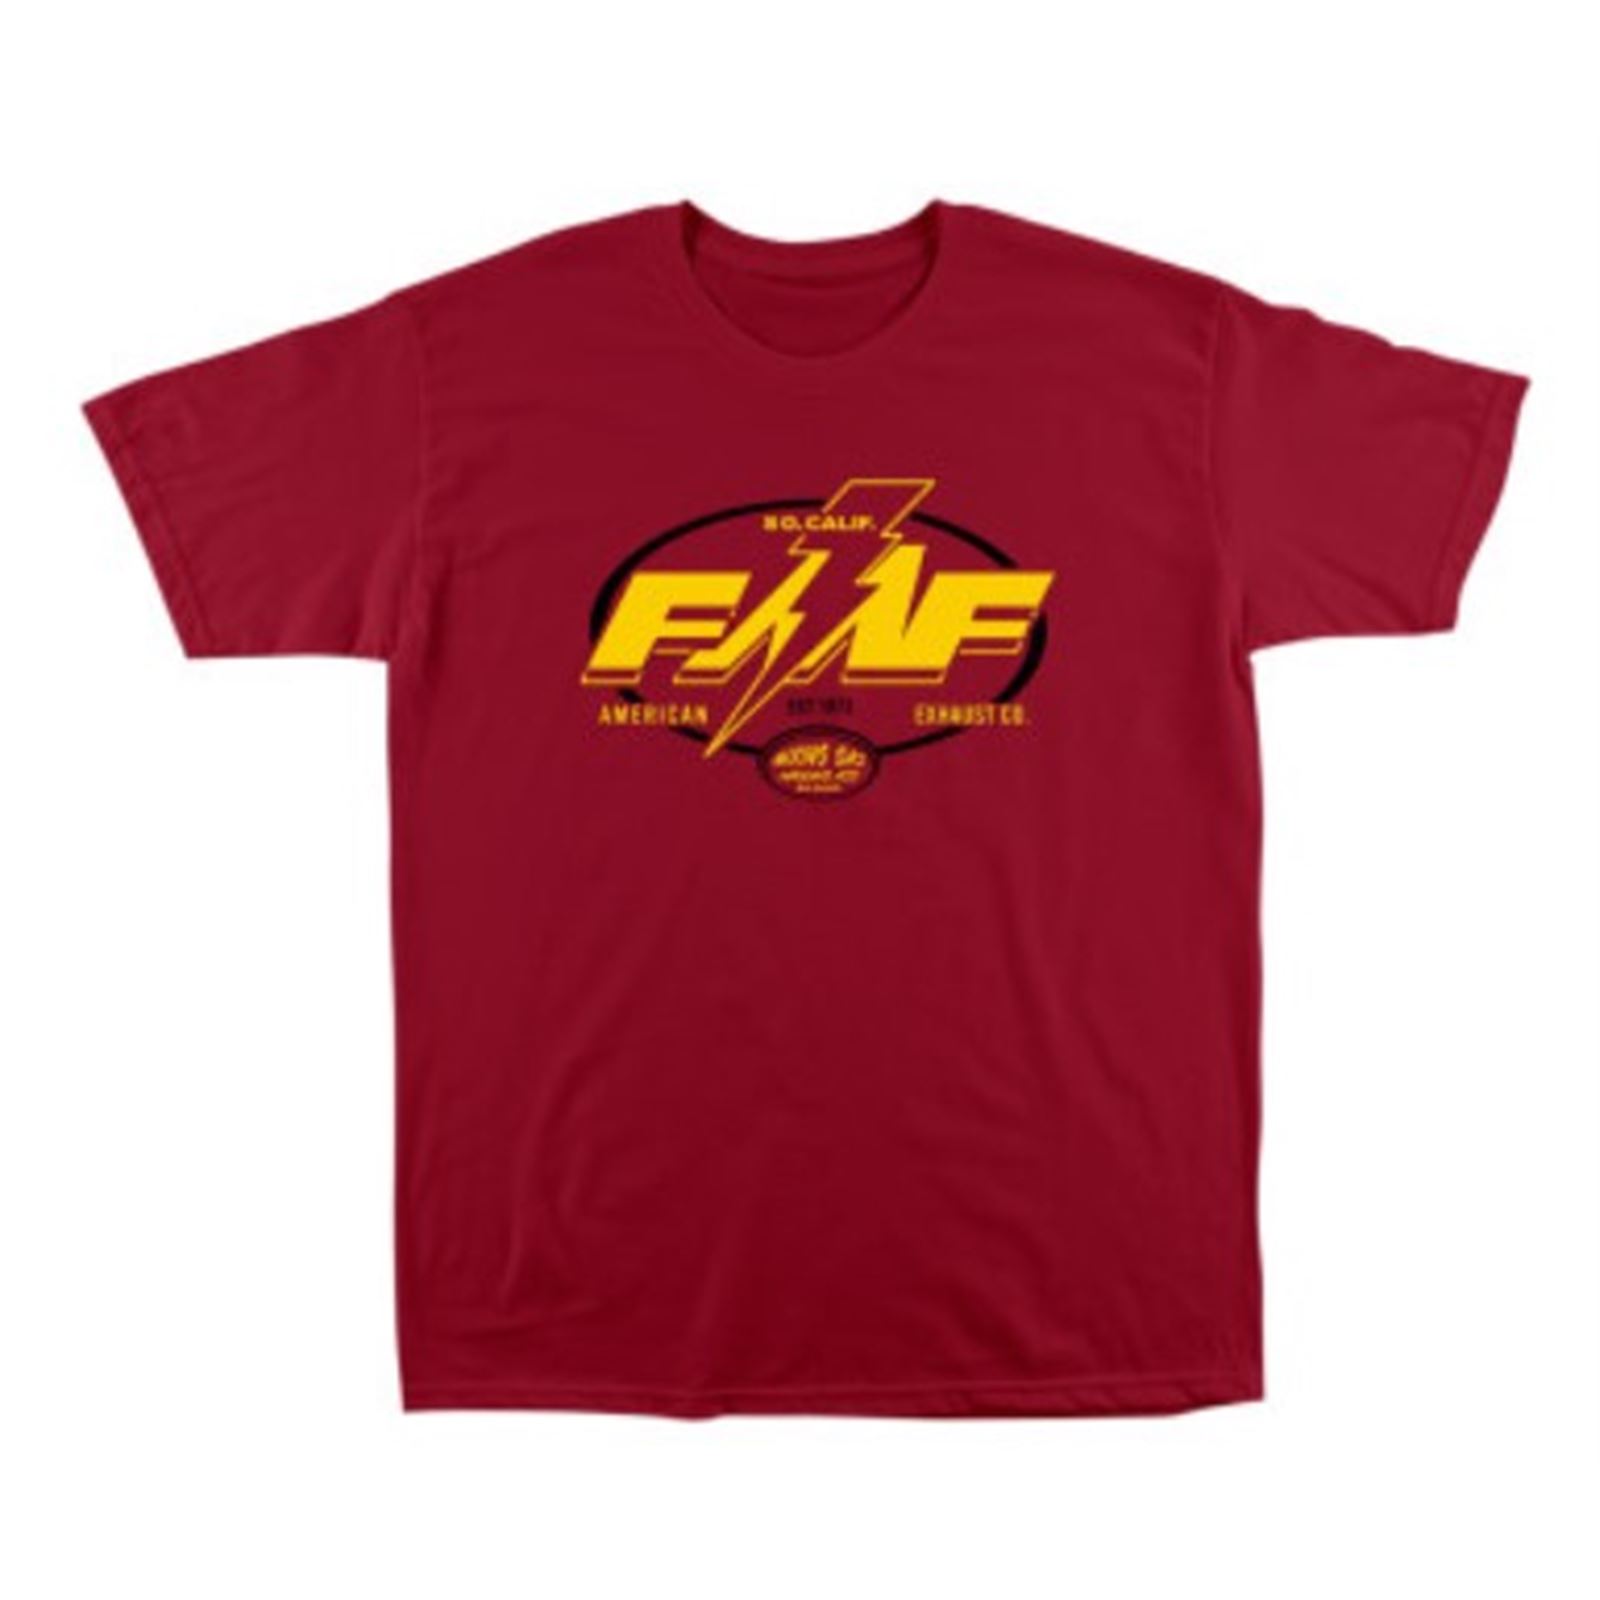 FMF Racing Broadcast Tee Shirt - Cardinal Red - Large